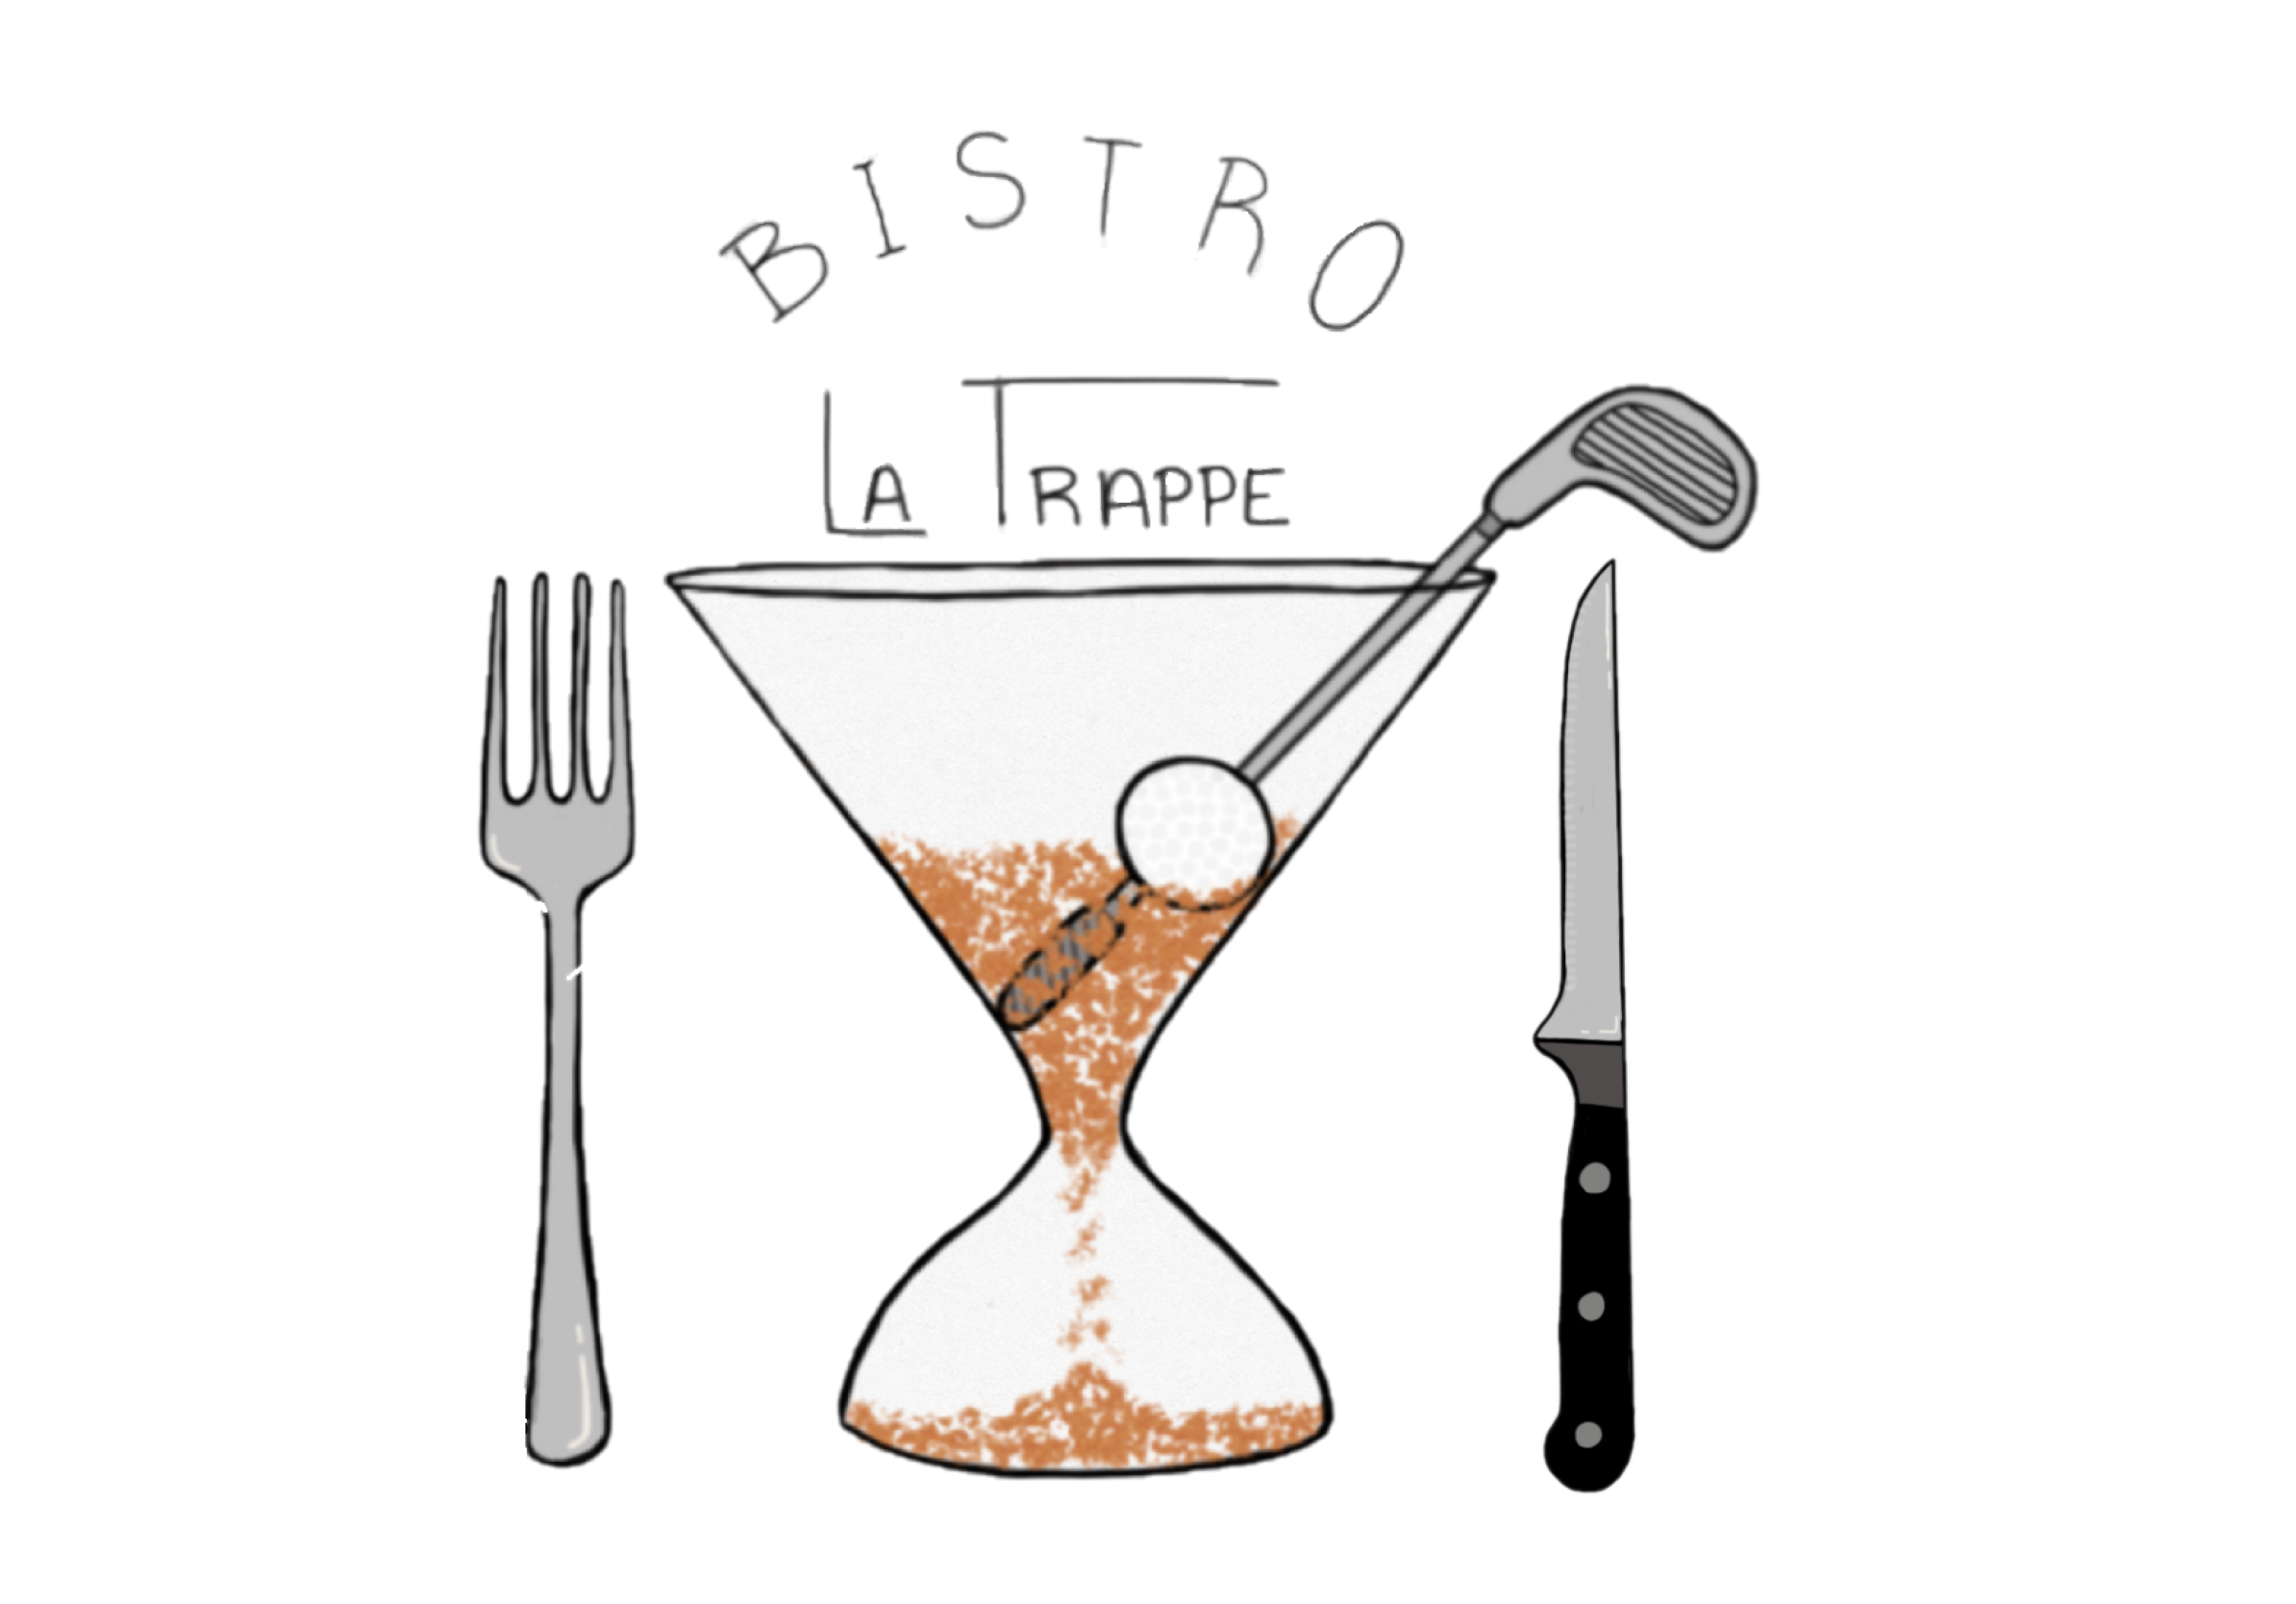 Bistro La Trappe Logo